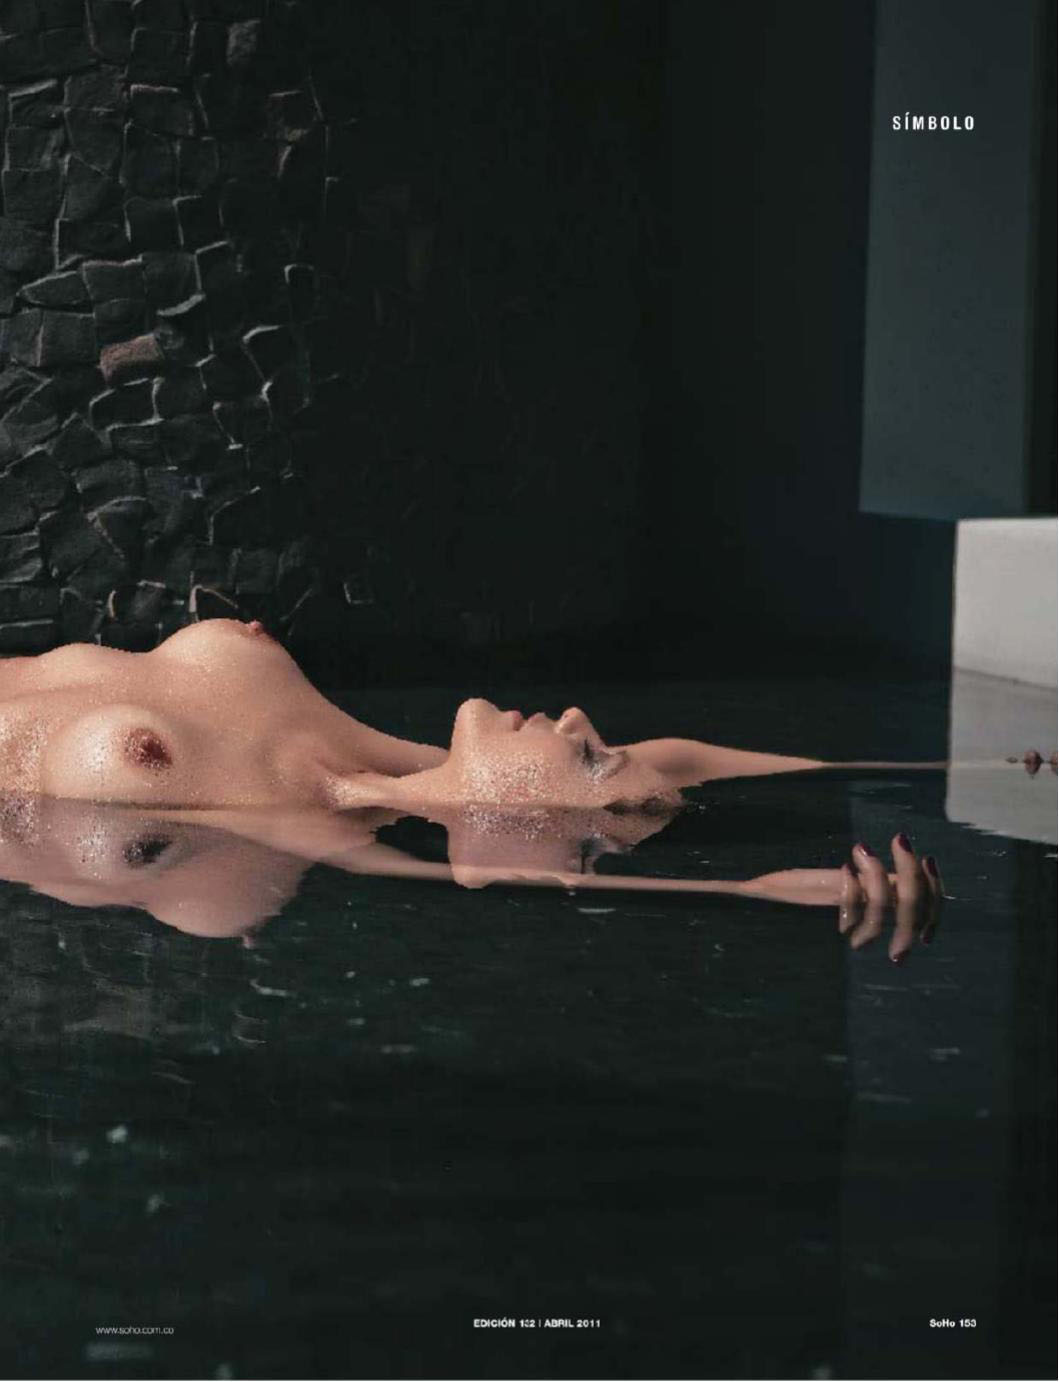 Cristina Umana naked in SoHo Magazine.